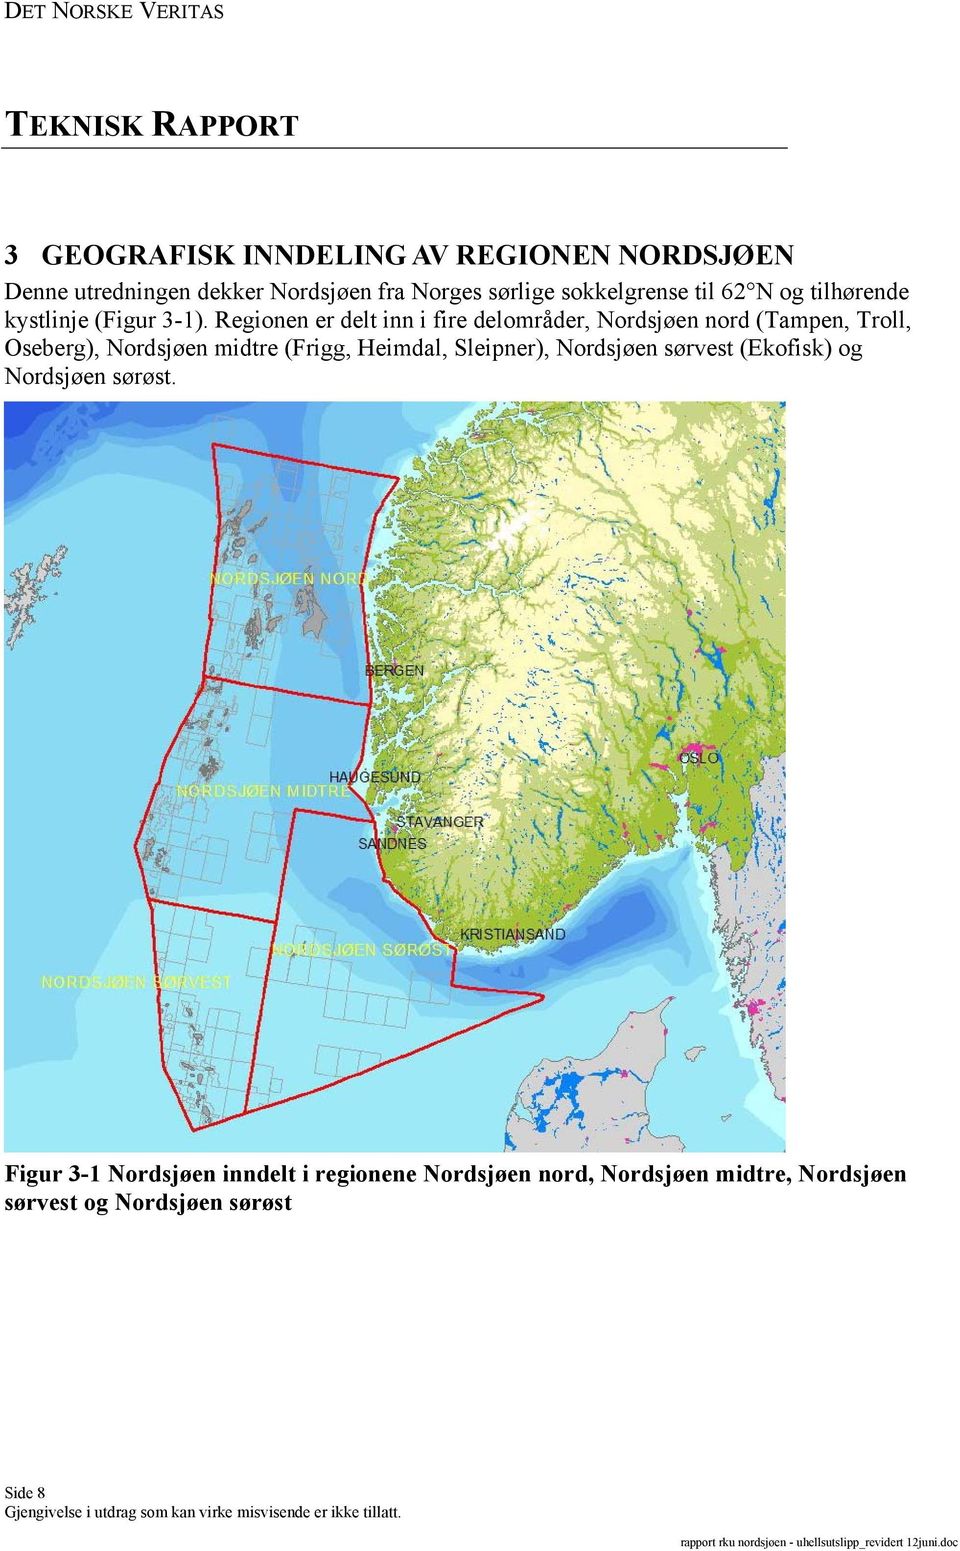 Regionen er delt inn i fire delområder, Nordsjøen nord (Tampen, Troll, Oseberg), Nordsjøen midtre (Frigg,